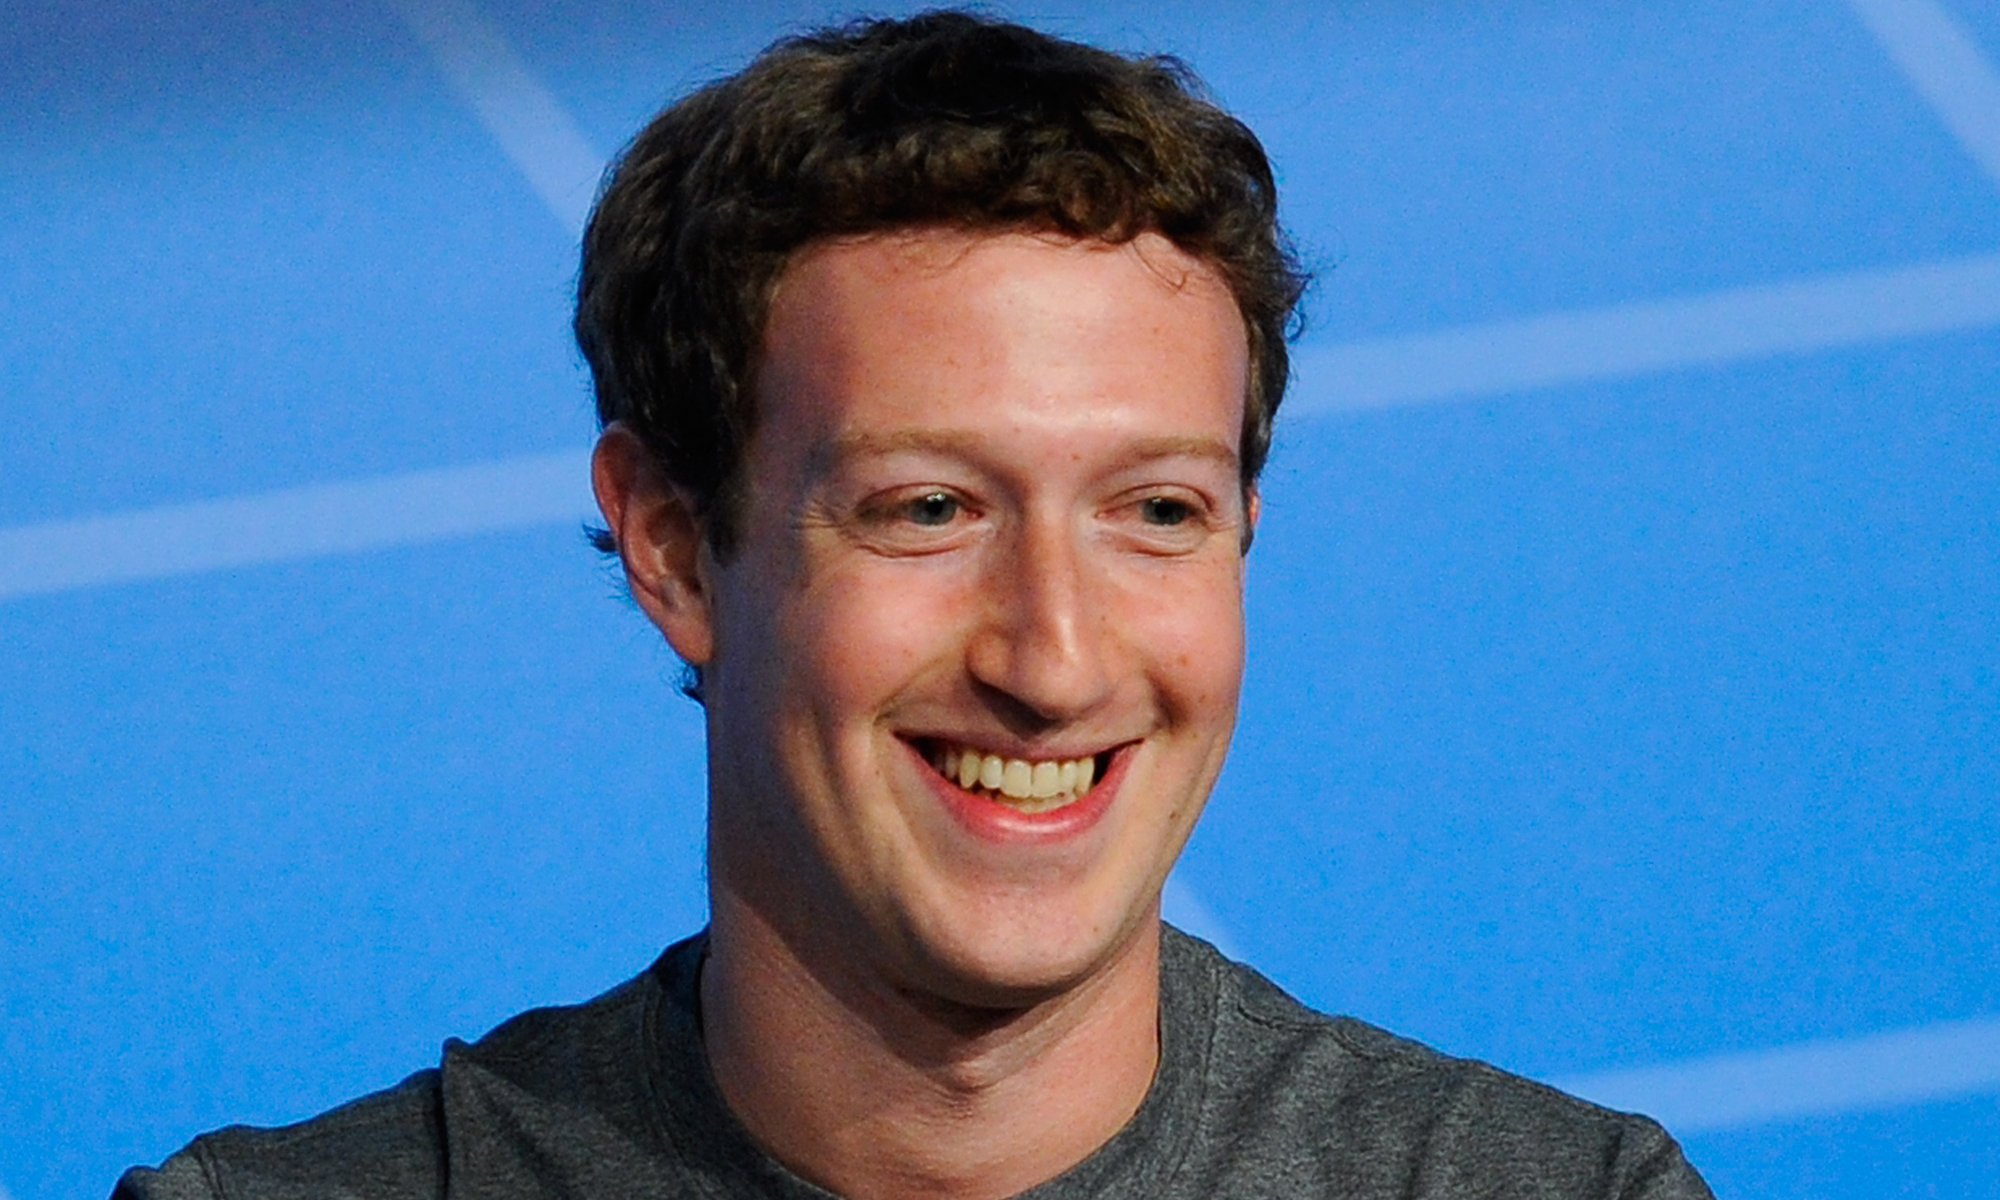   Mark Zuckerberg bền bỉ theo đuổi ước mơ của mình  